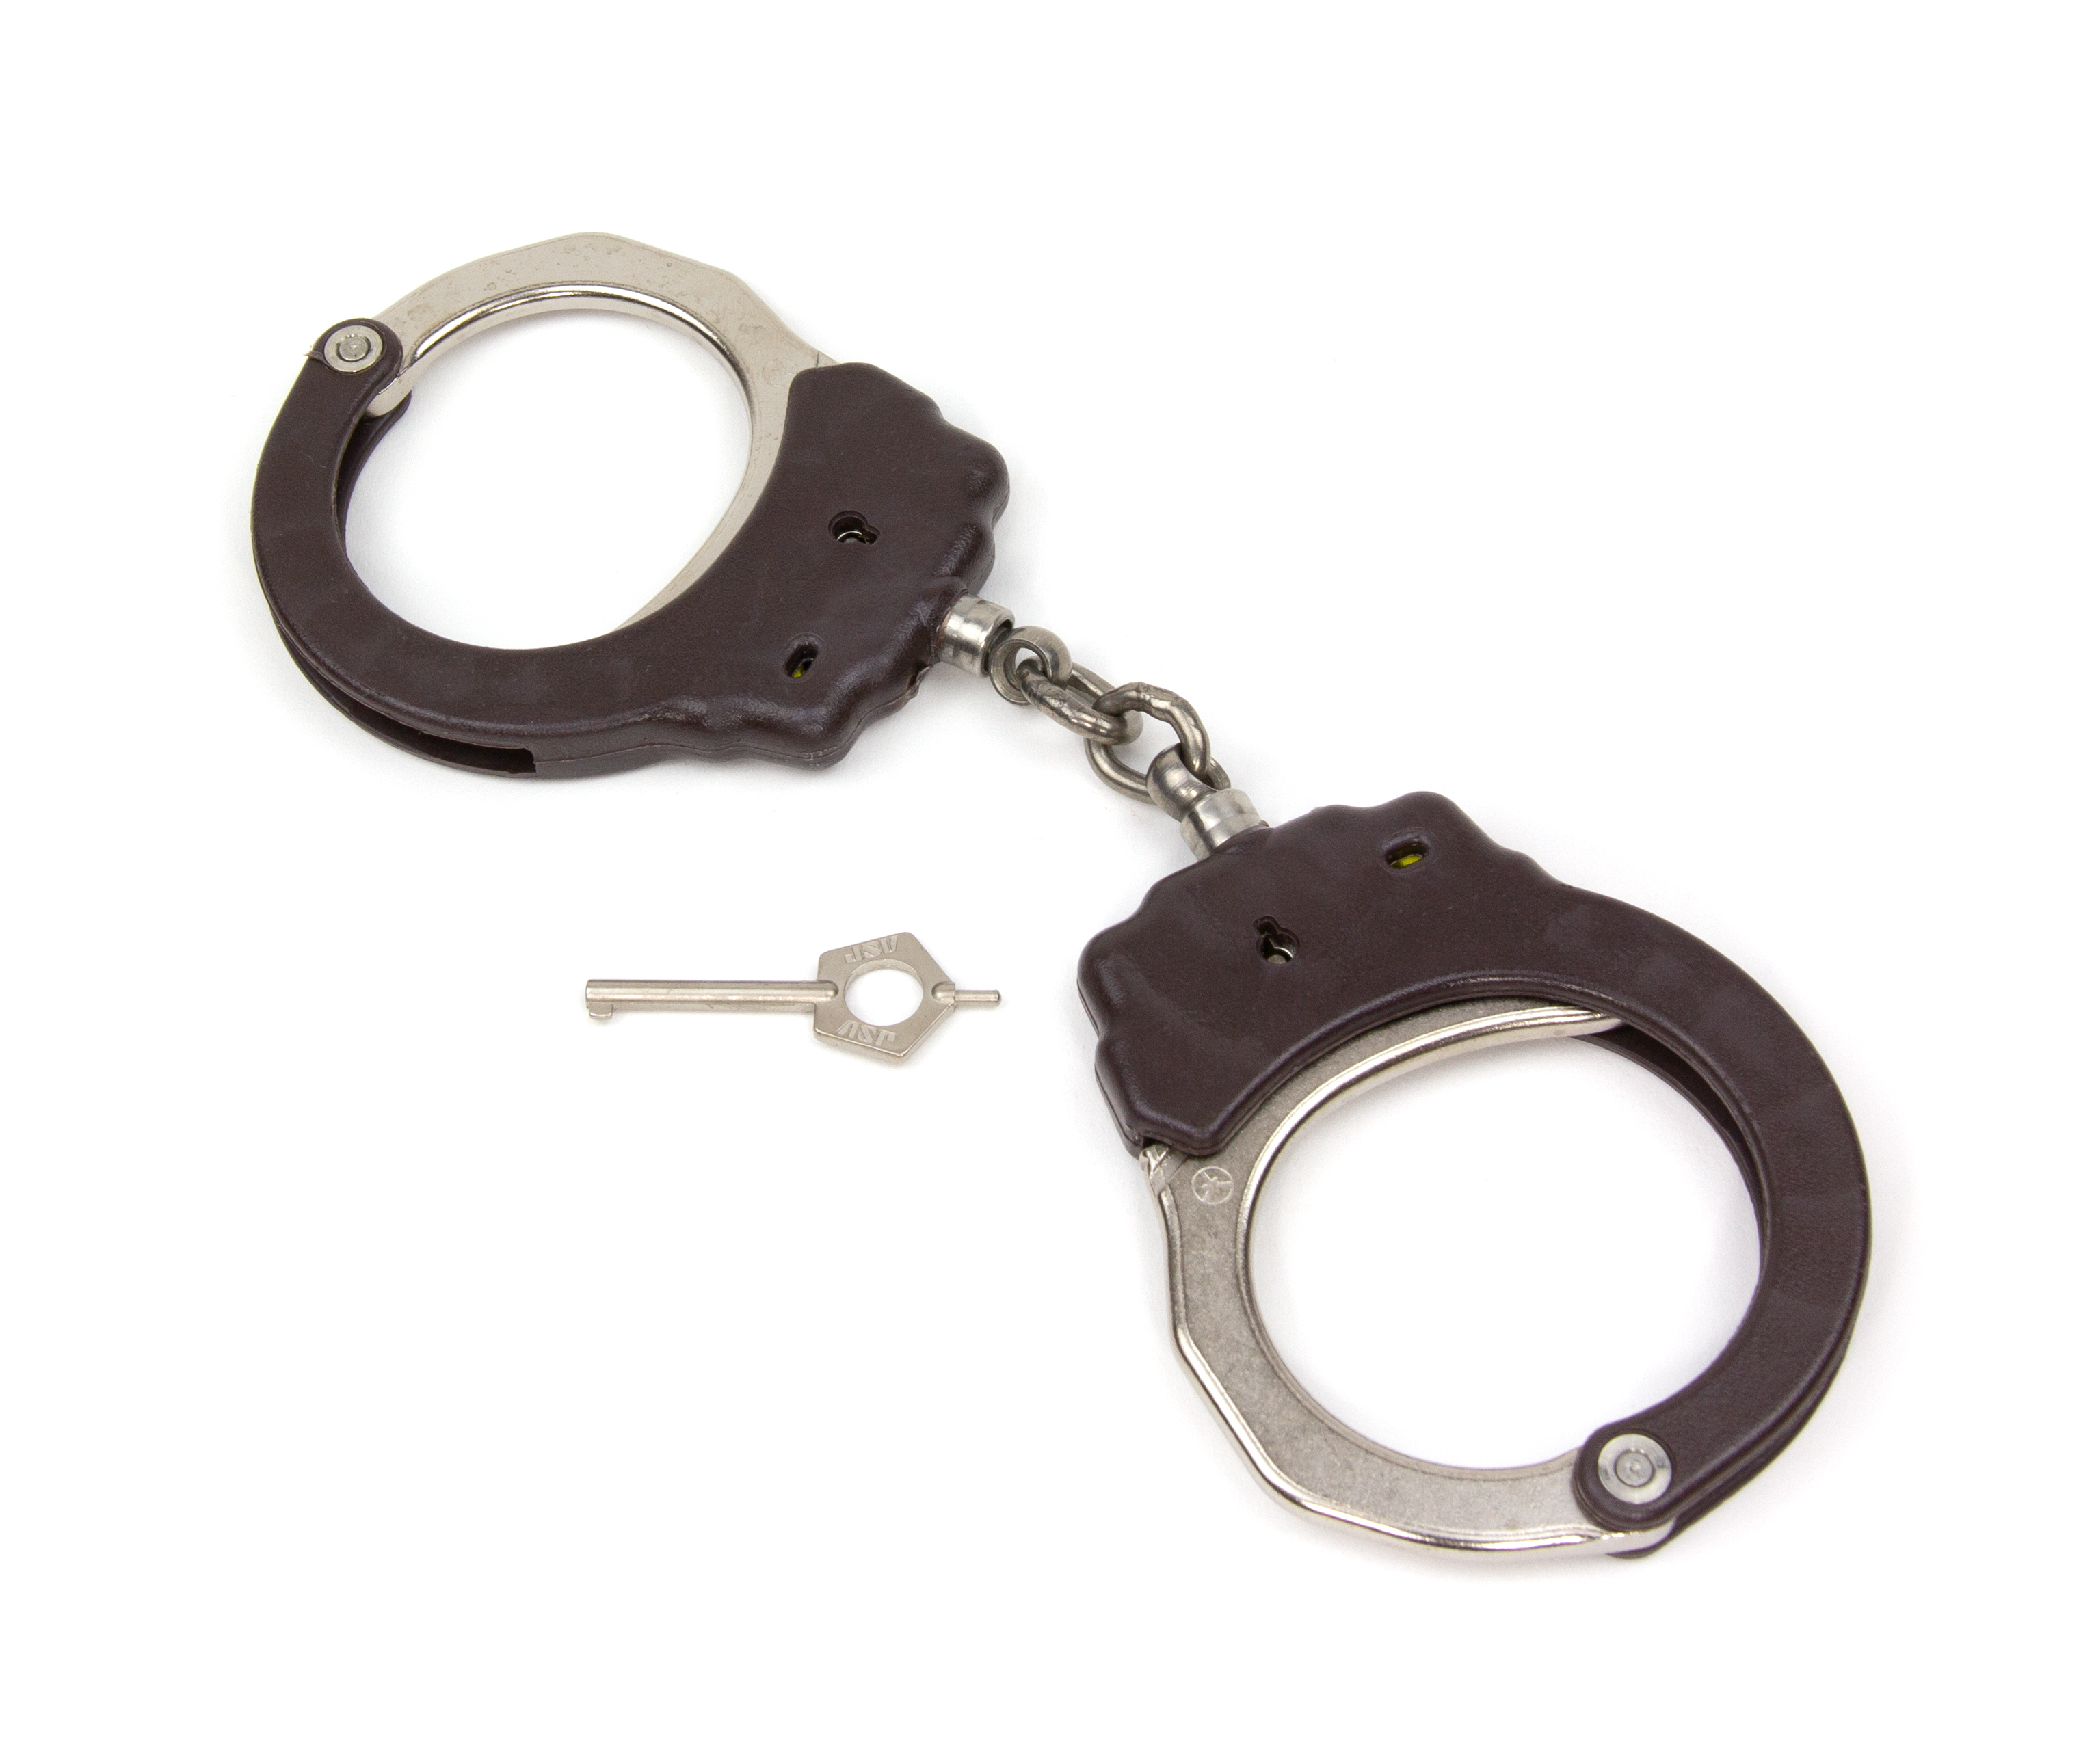 ASP Identifier Chain Flex Cuffs Brown - 56105 / Model 100 Braun